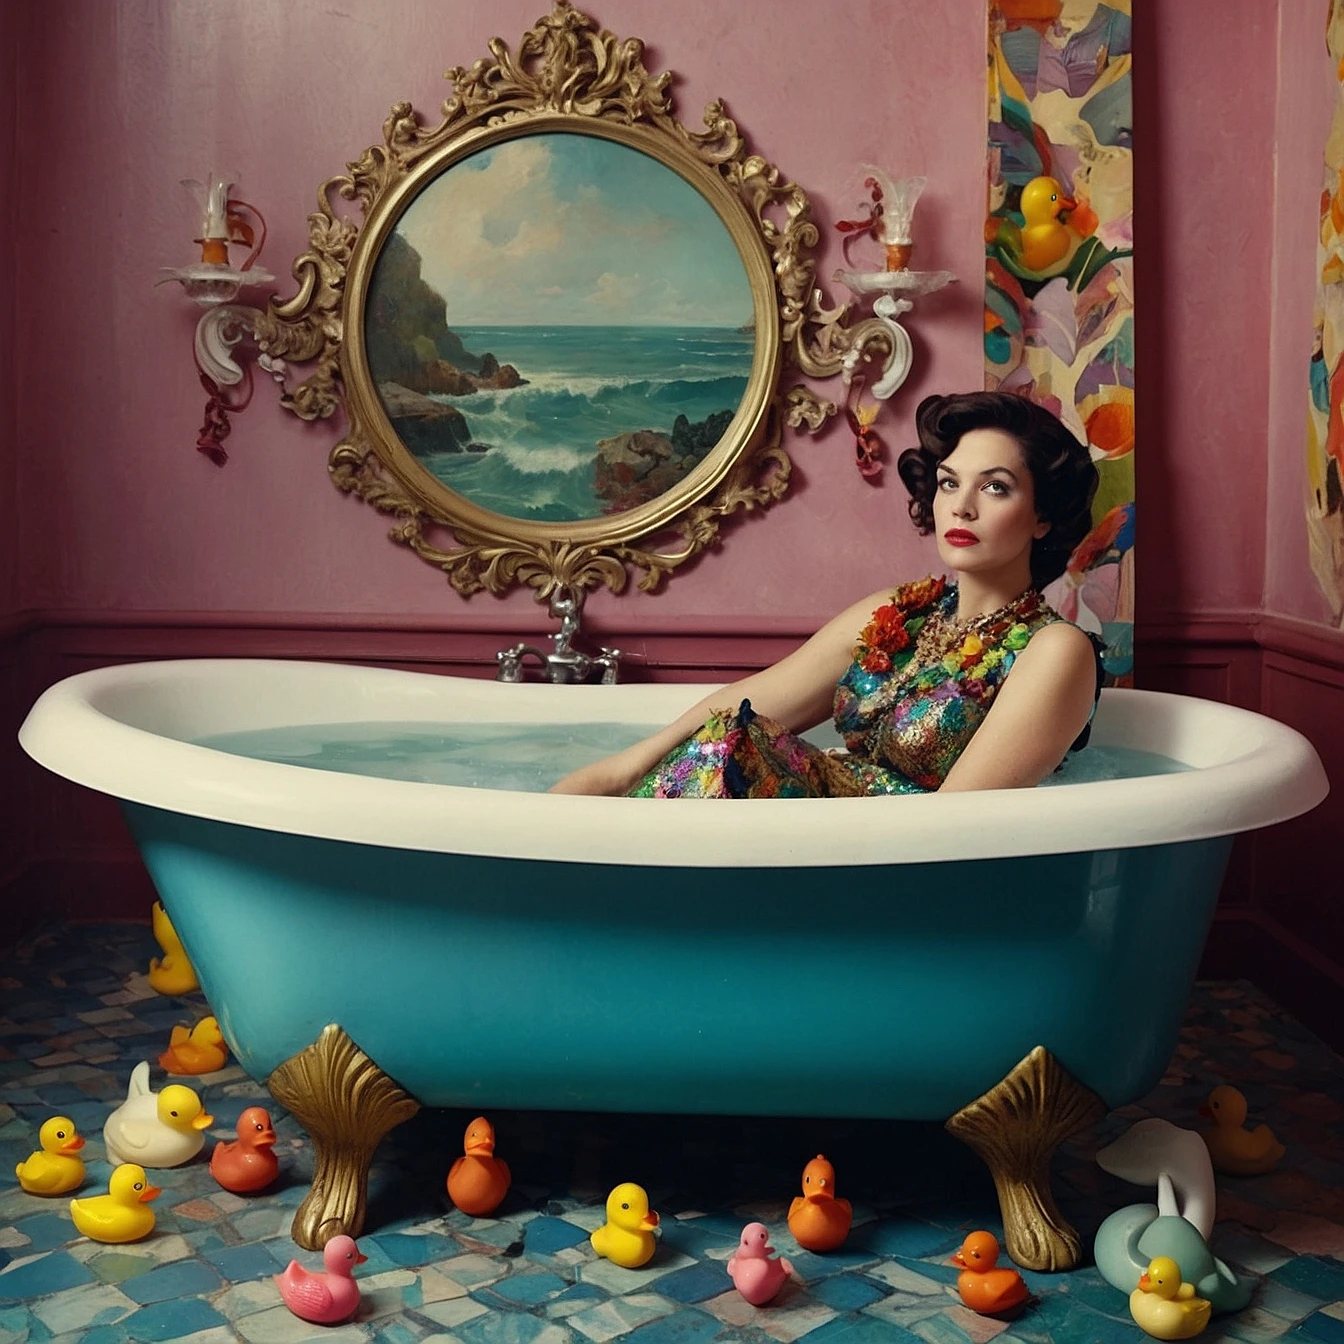 mermaid woman sits on a worn-out bathtub